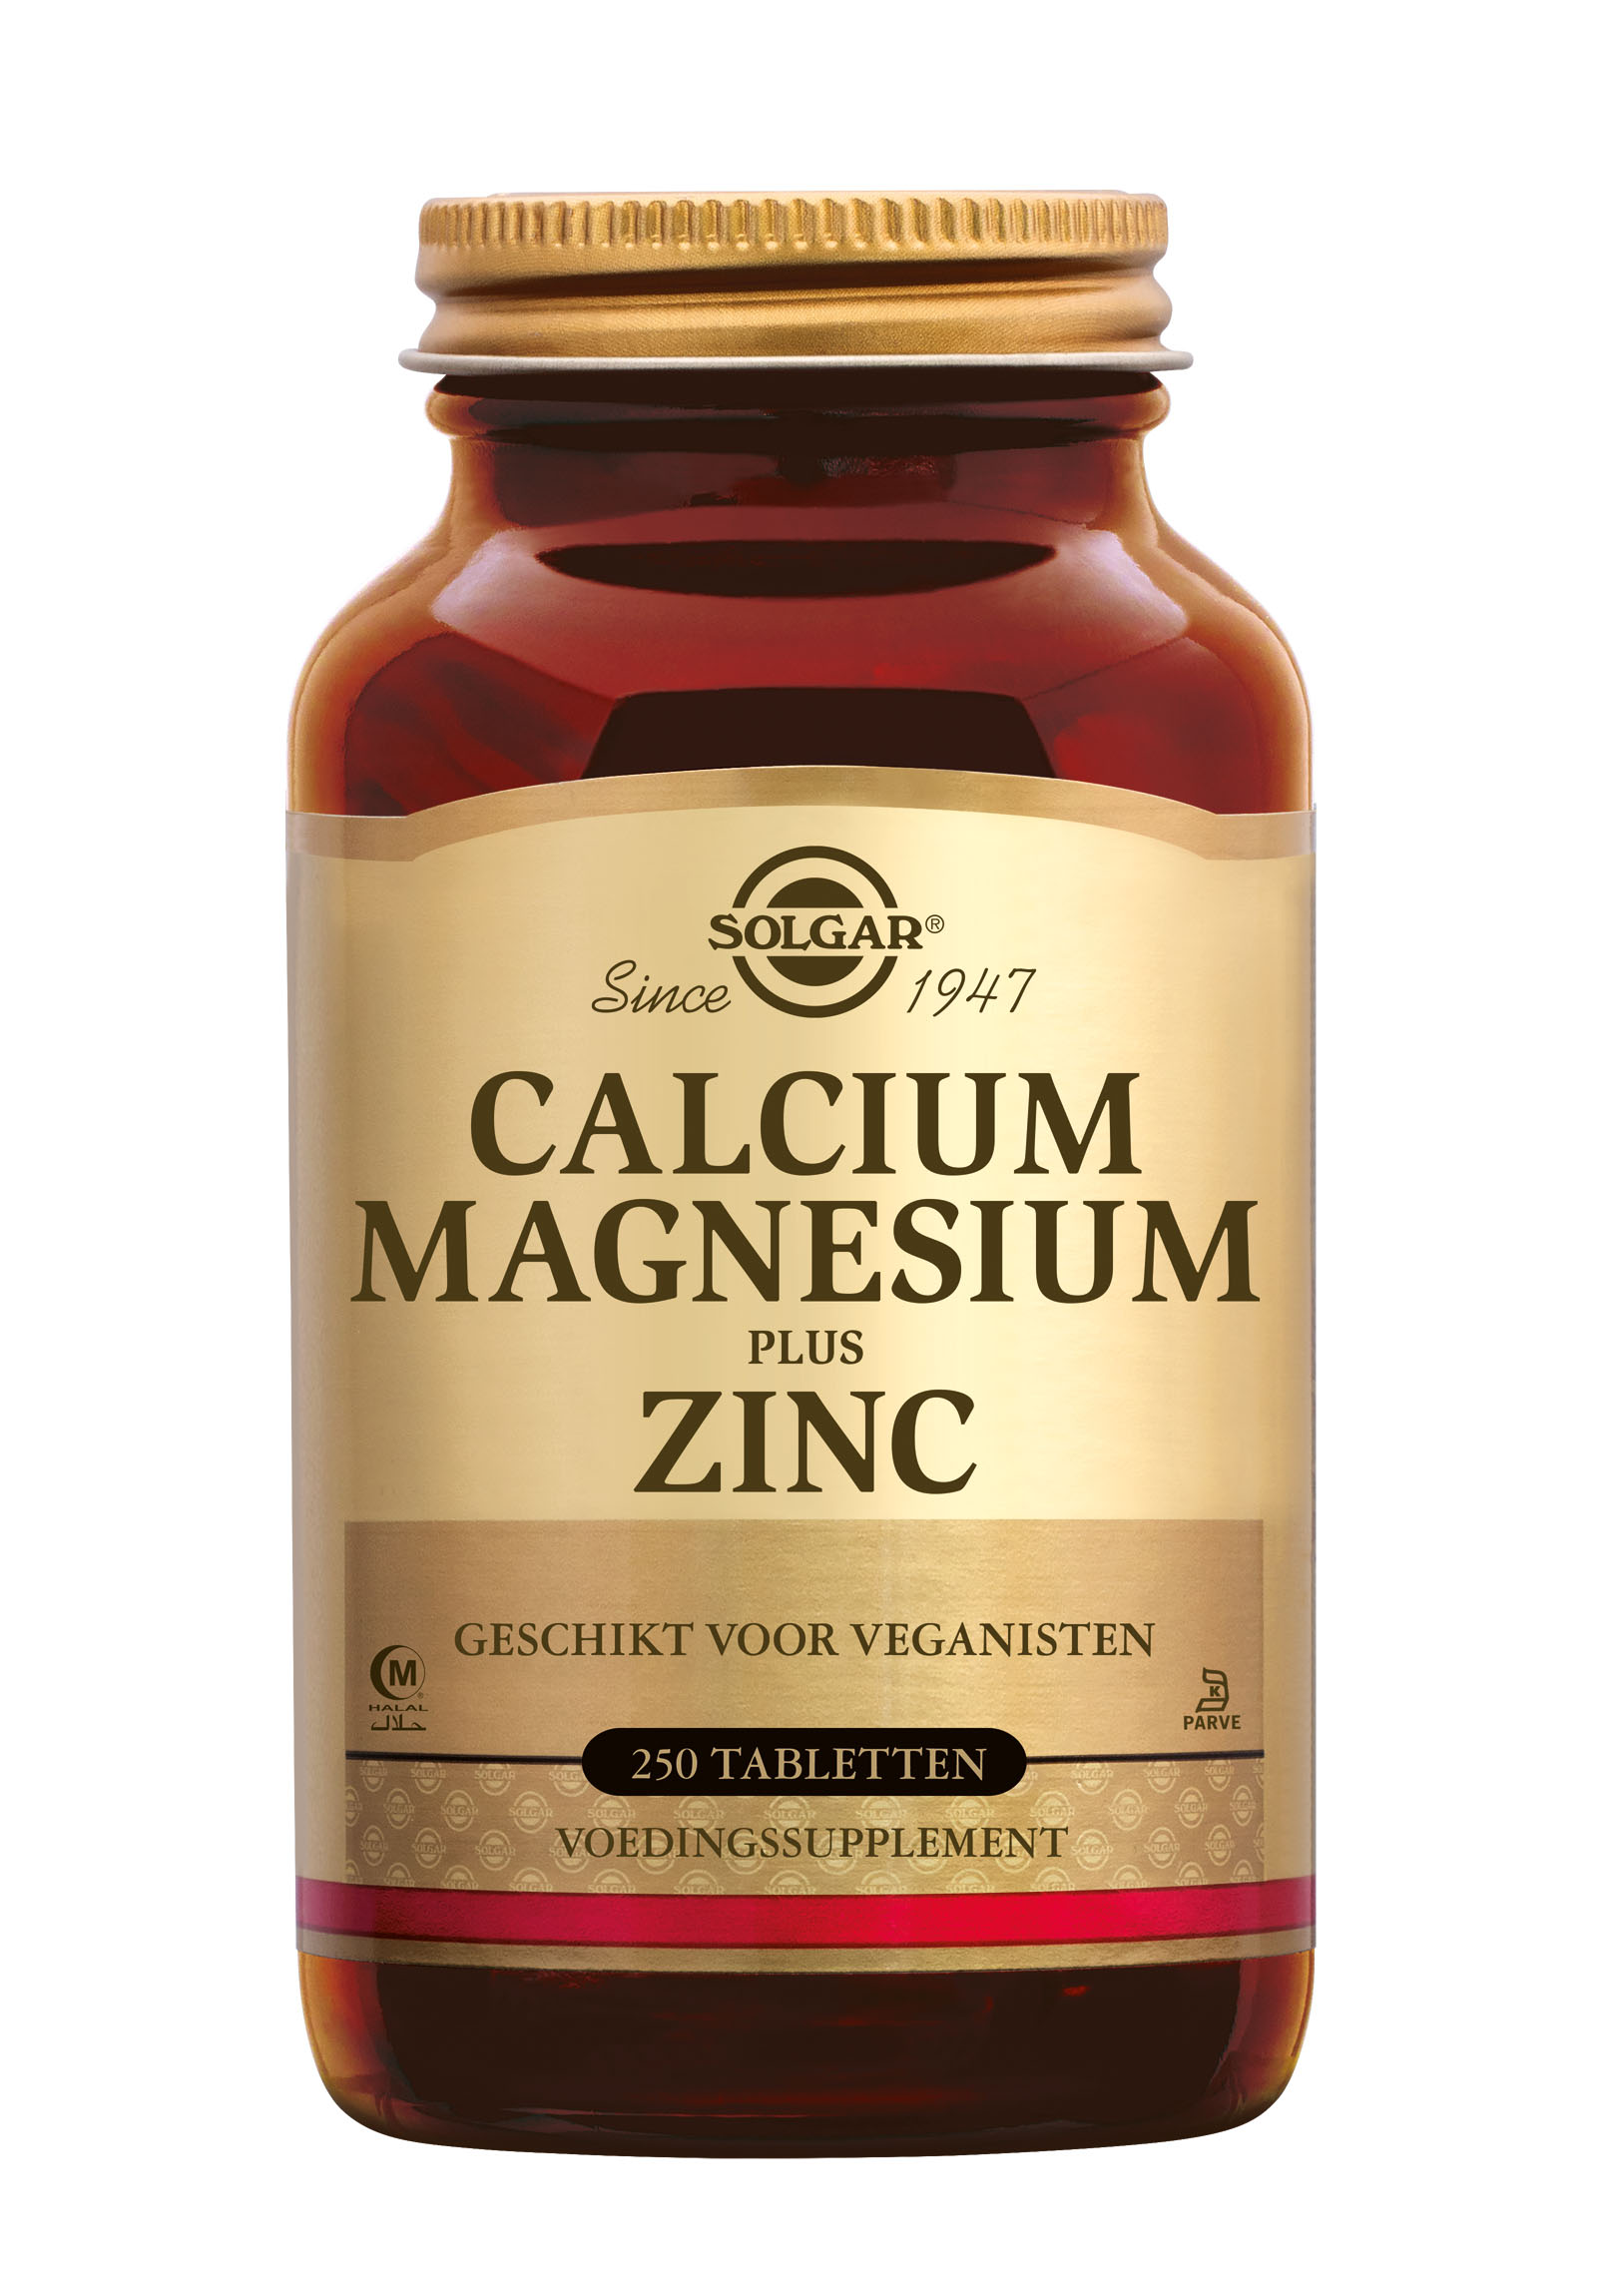 Solgar Calcium Magnesium plus Zinc (250 stuks)